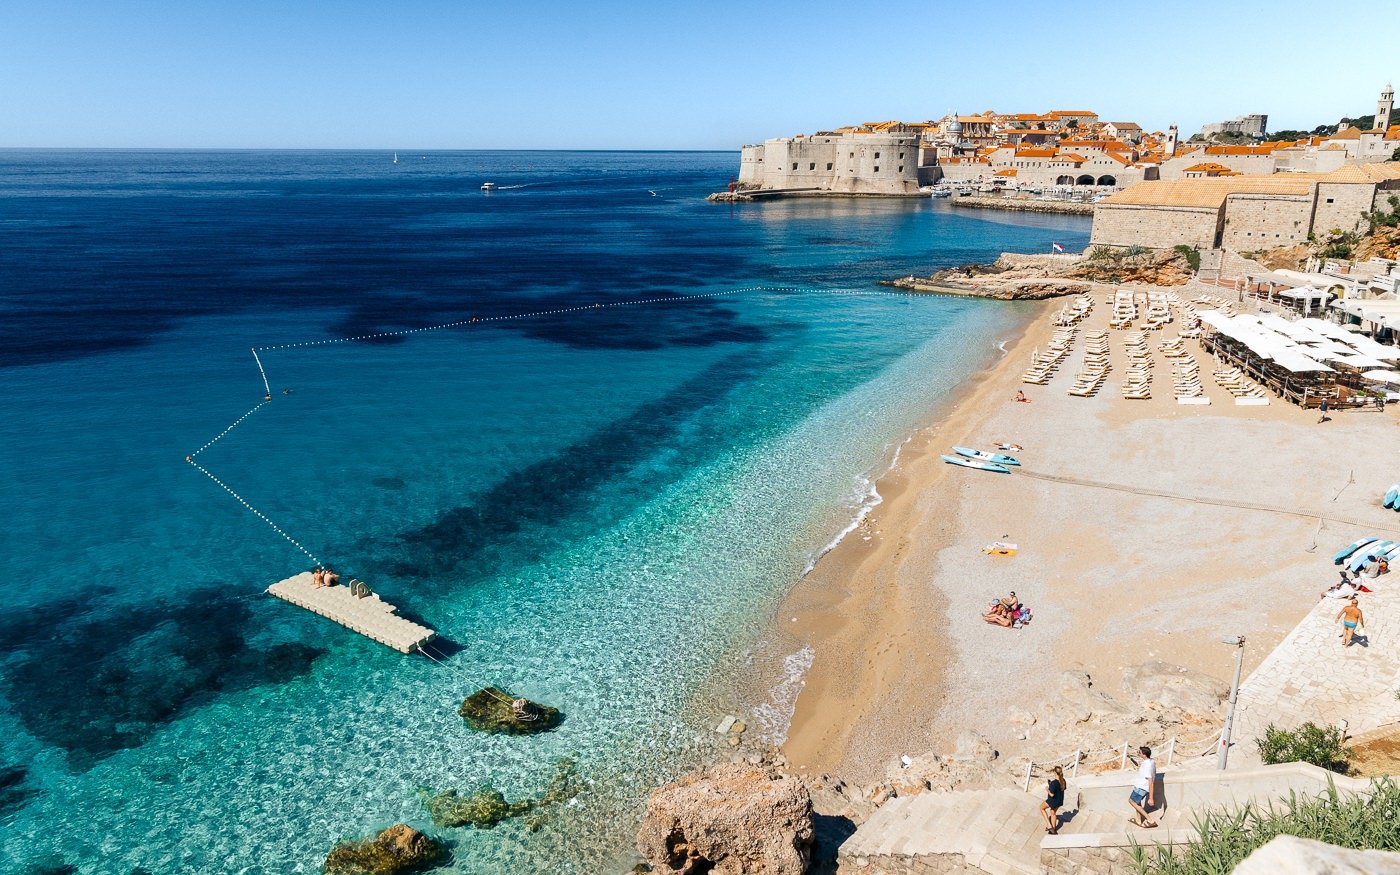 Beach hotel in Dubrovnik, Croatia